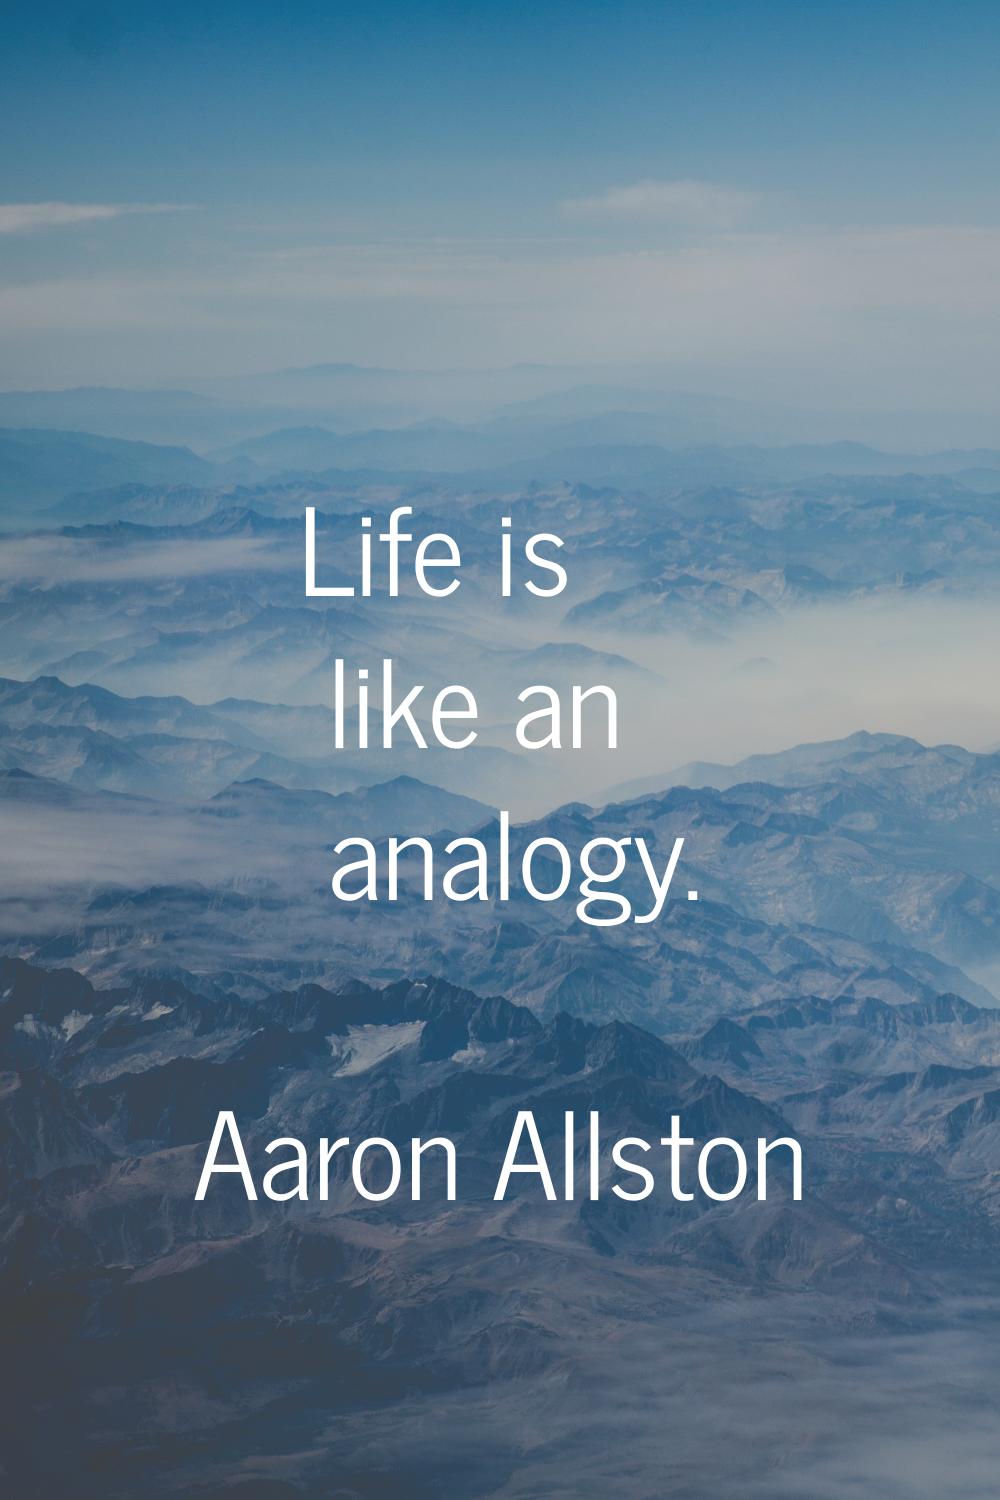 Life is like an analogy.